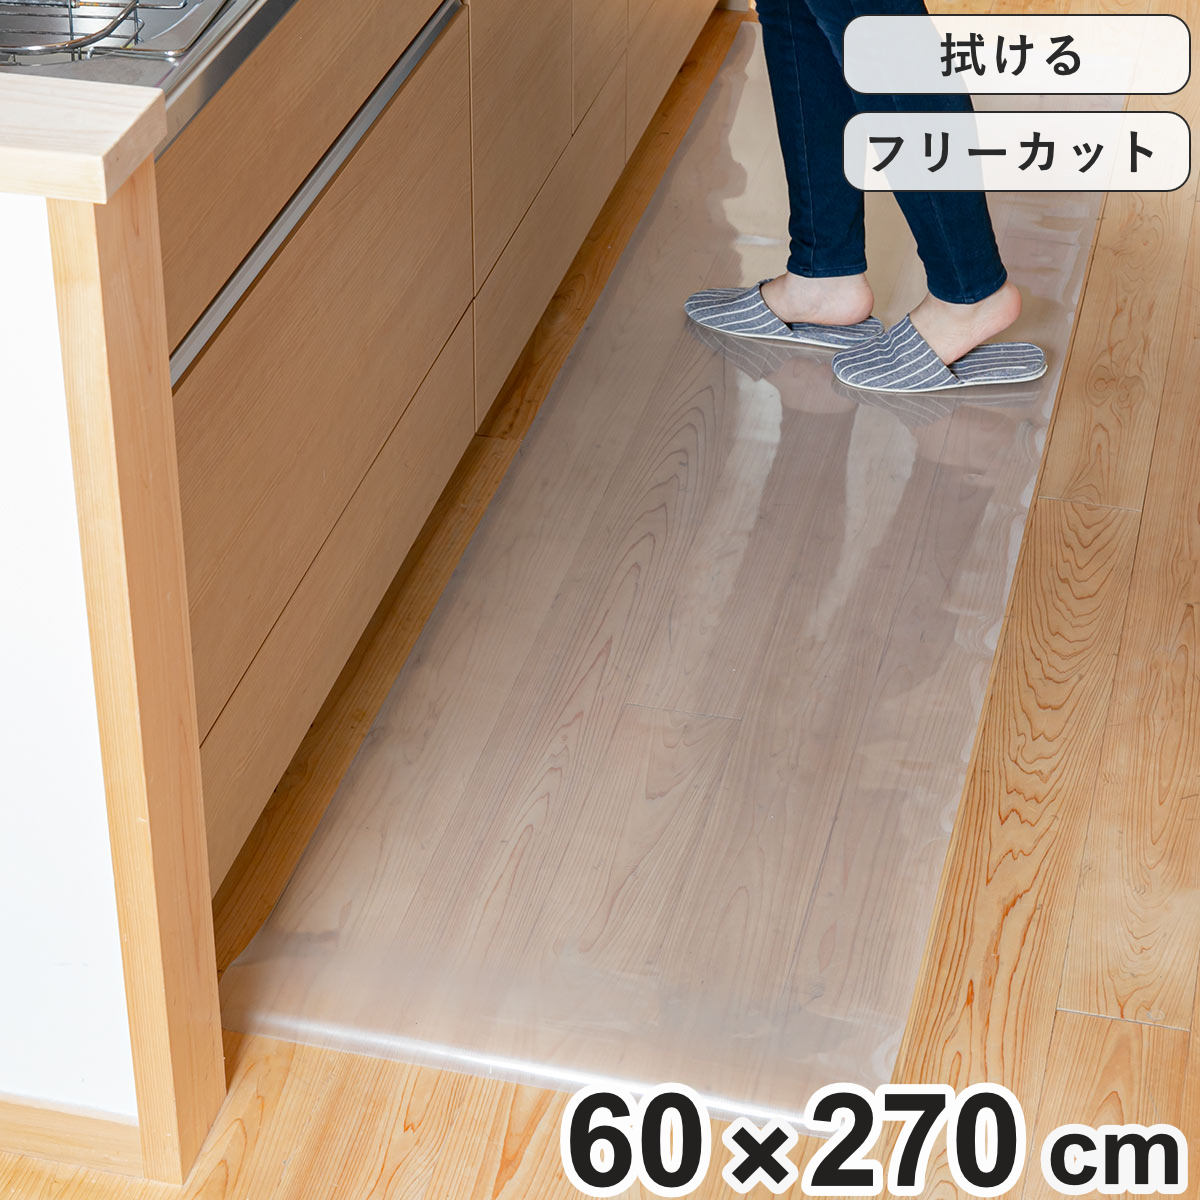 キッチンマット 拭ける 60×270cm クリア